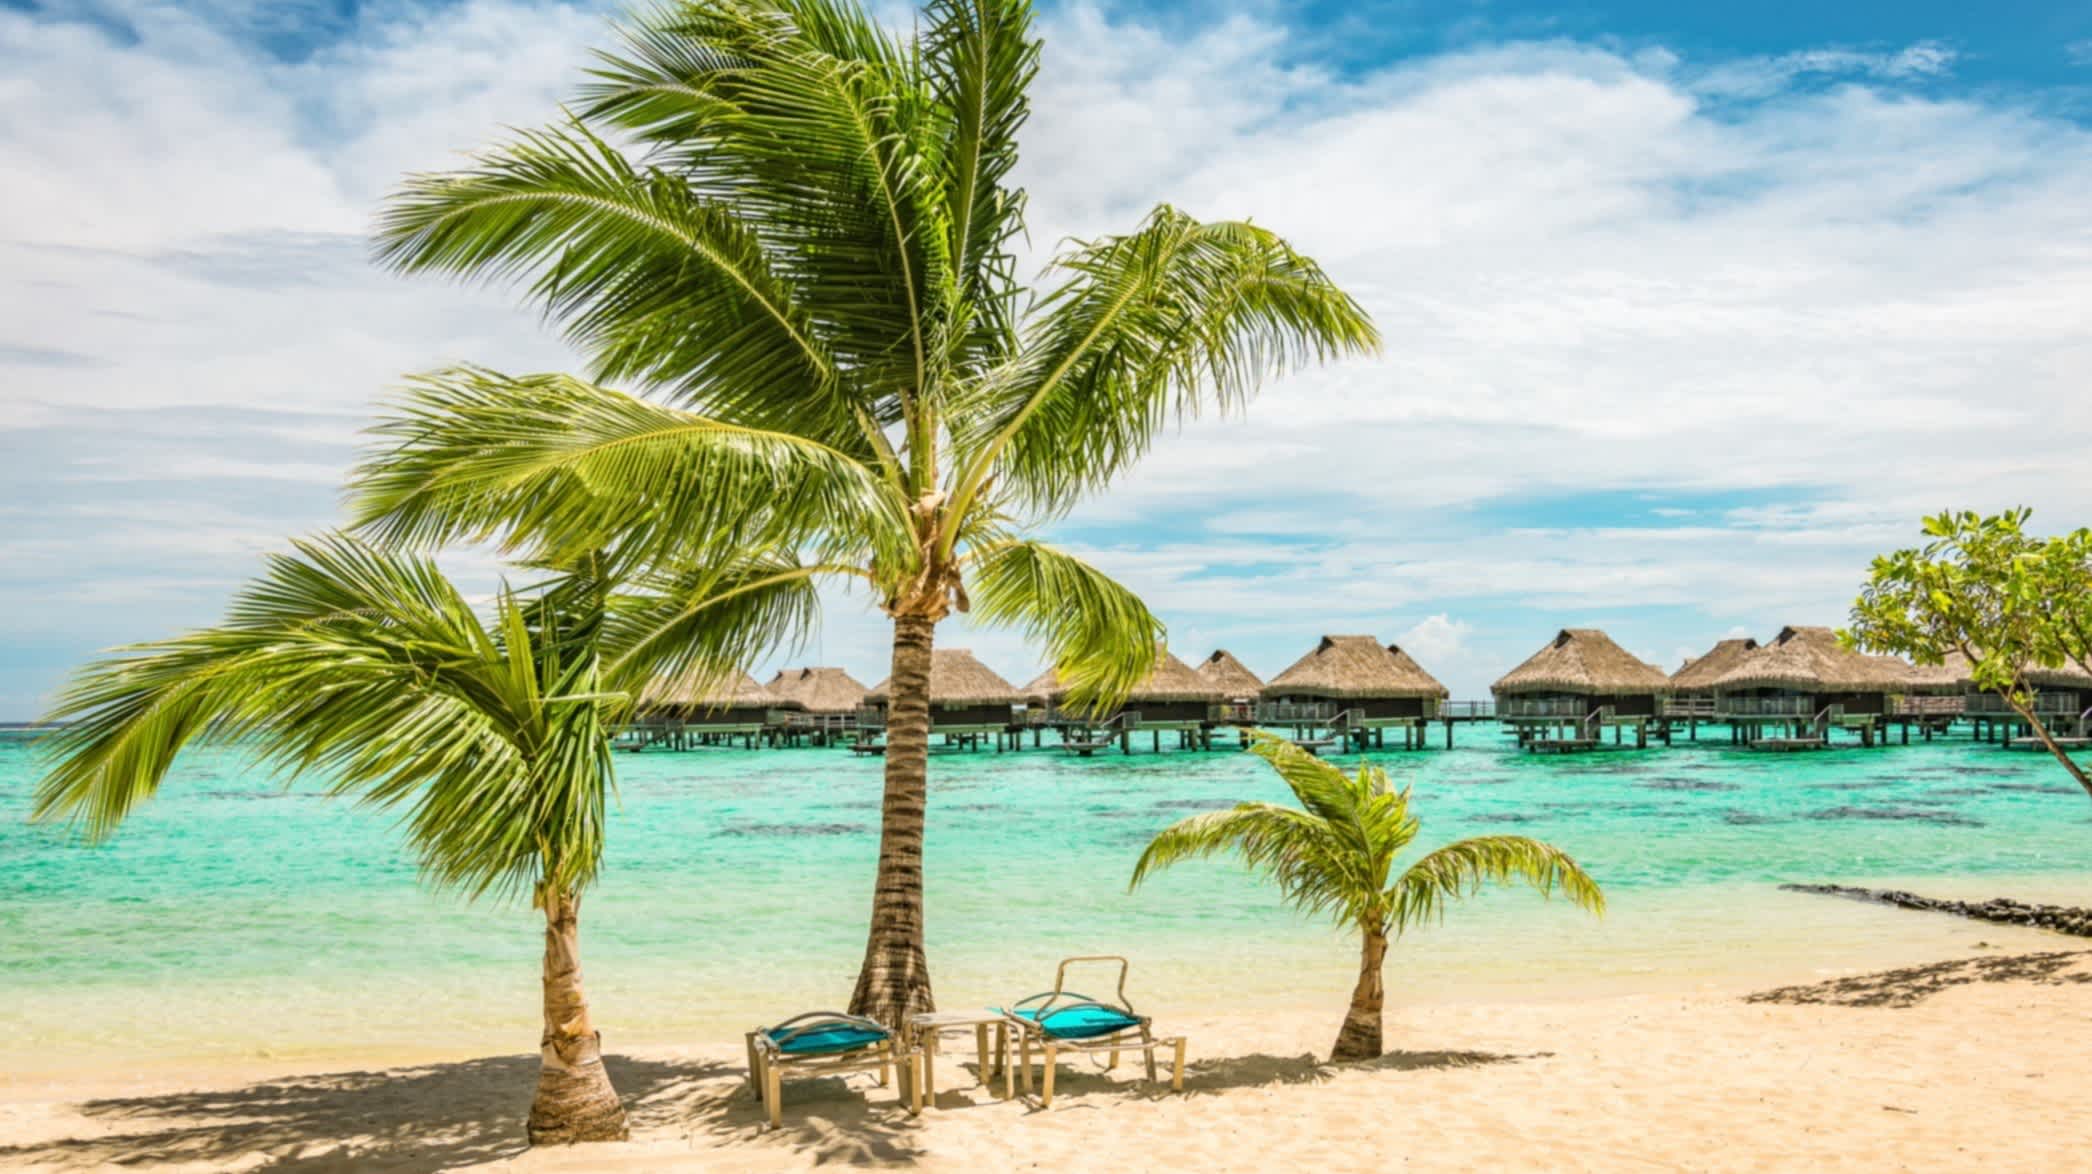 Blick auf den tropischen Strand mit Palmen und Sonnenliegen, Bora Bora, Französisch-Polynesien.